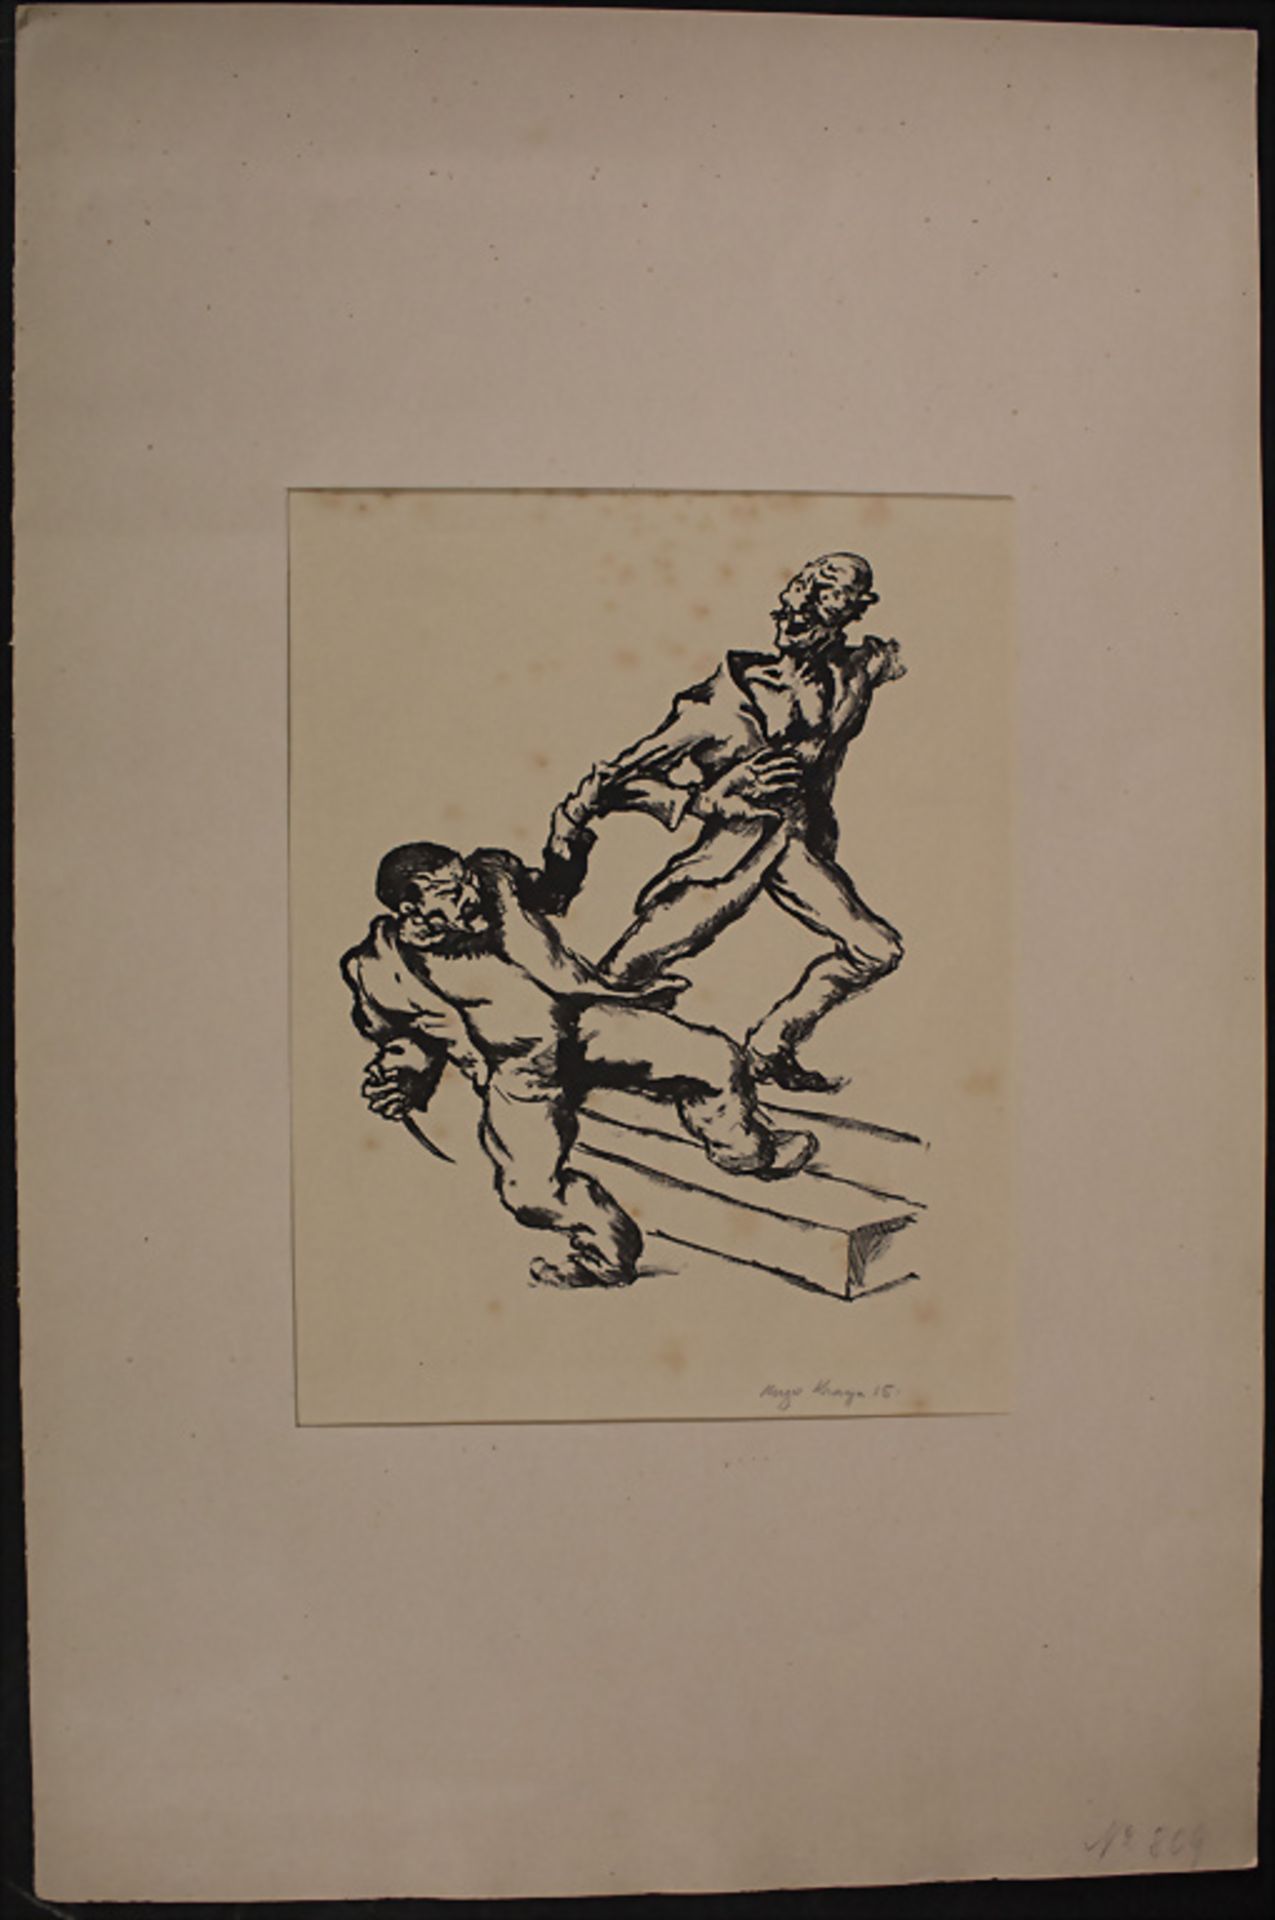 Hugo KRAYN (1885-1919), 'Der Angriff' / 'The Attack', Deutschland, 1915 - Bild 2 aus 4